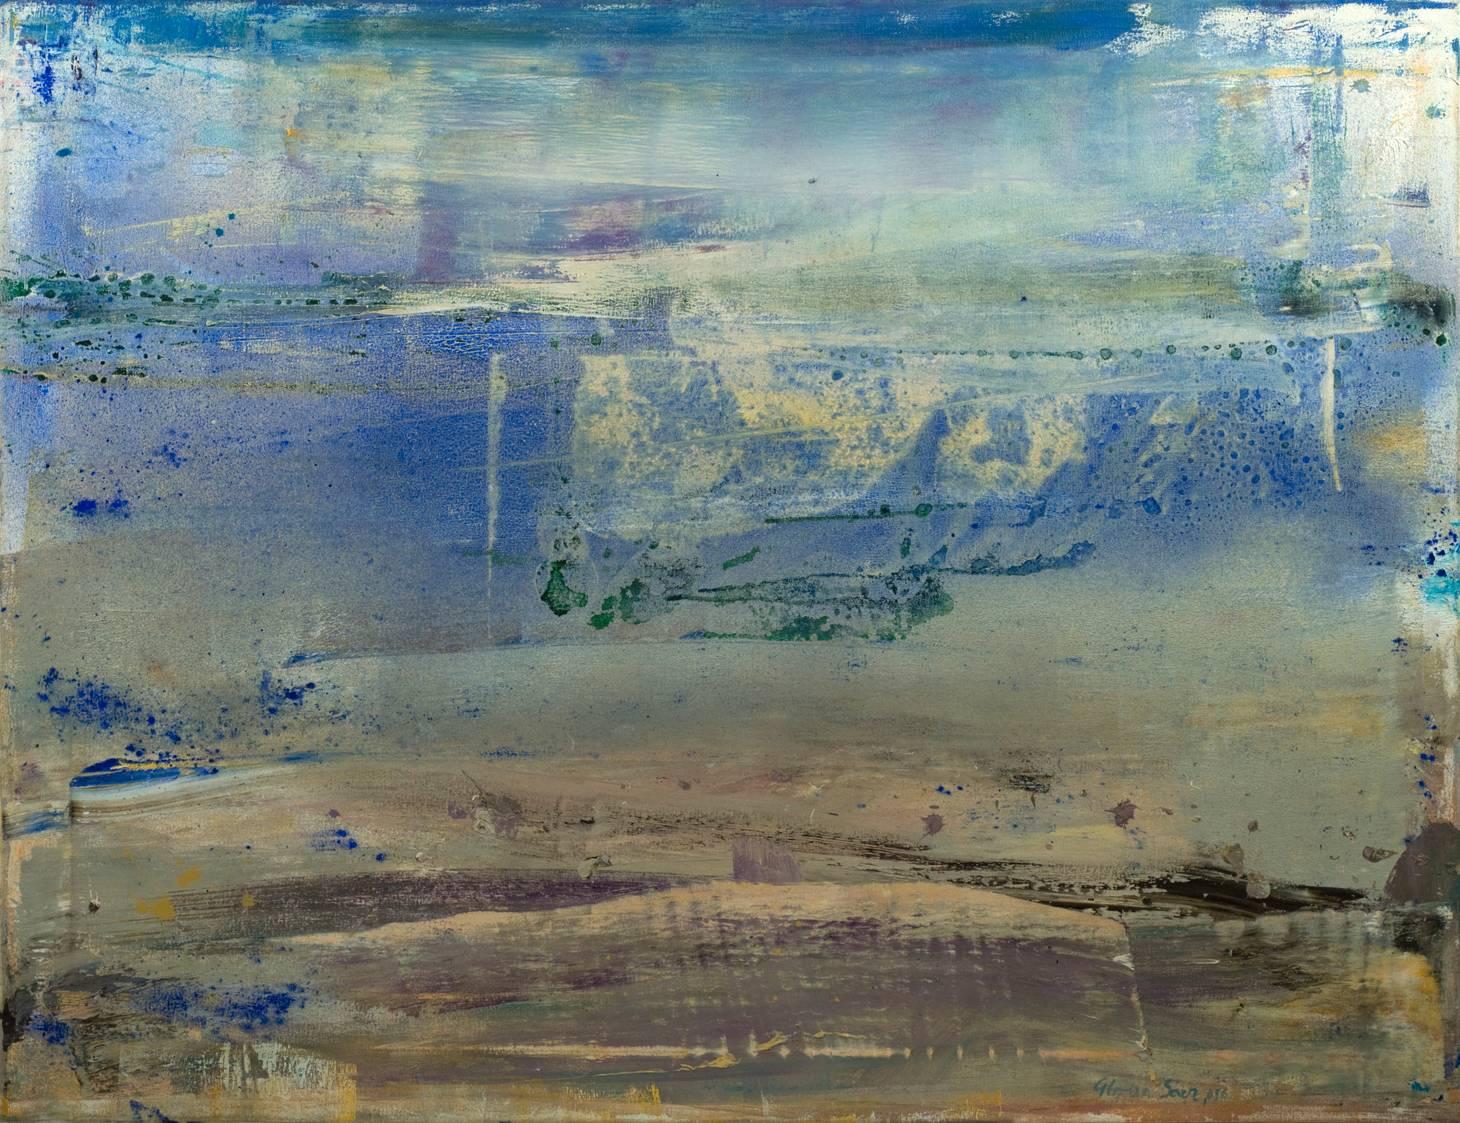 Gloria Sáez Landscape Painting - Gloria Saez, Carihuela, Oil on canvas, 2016